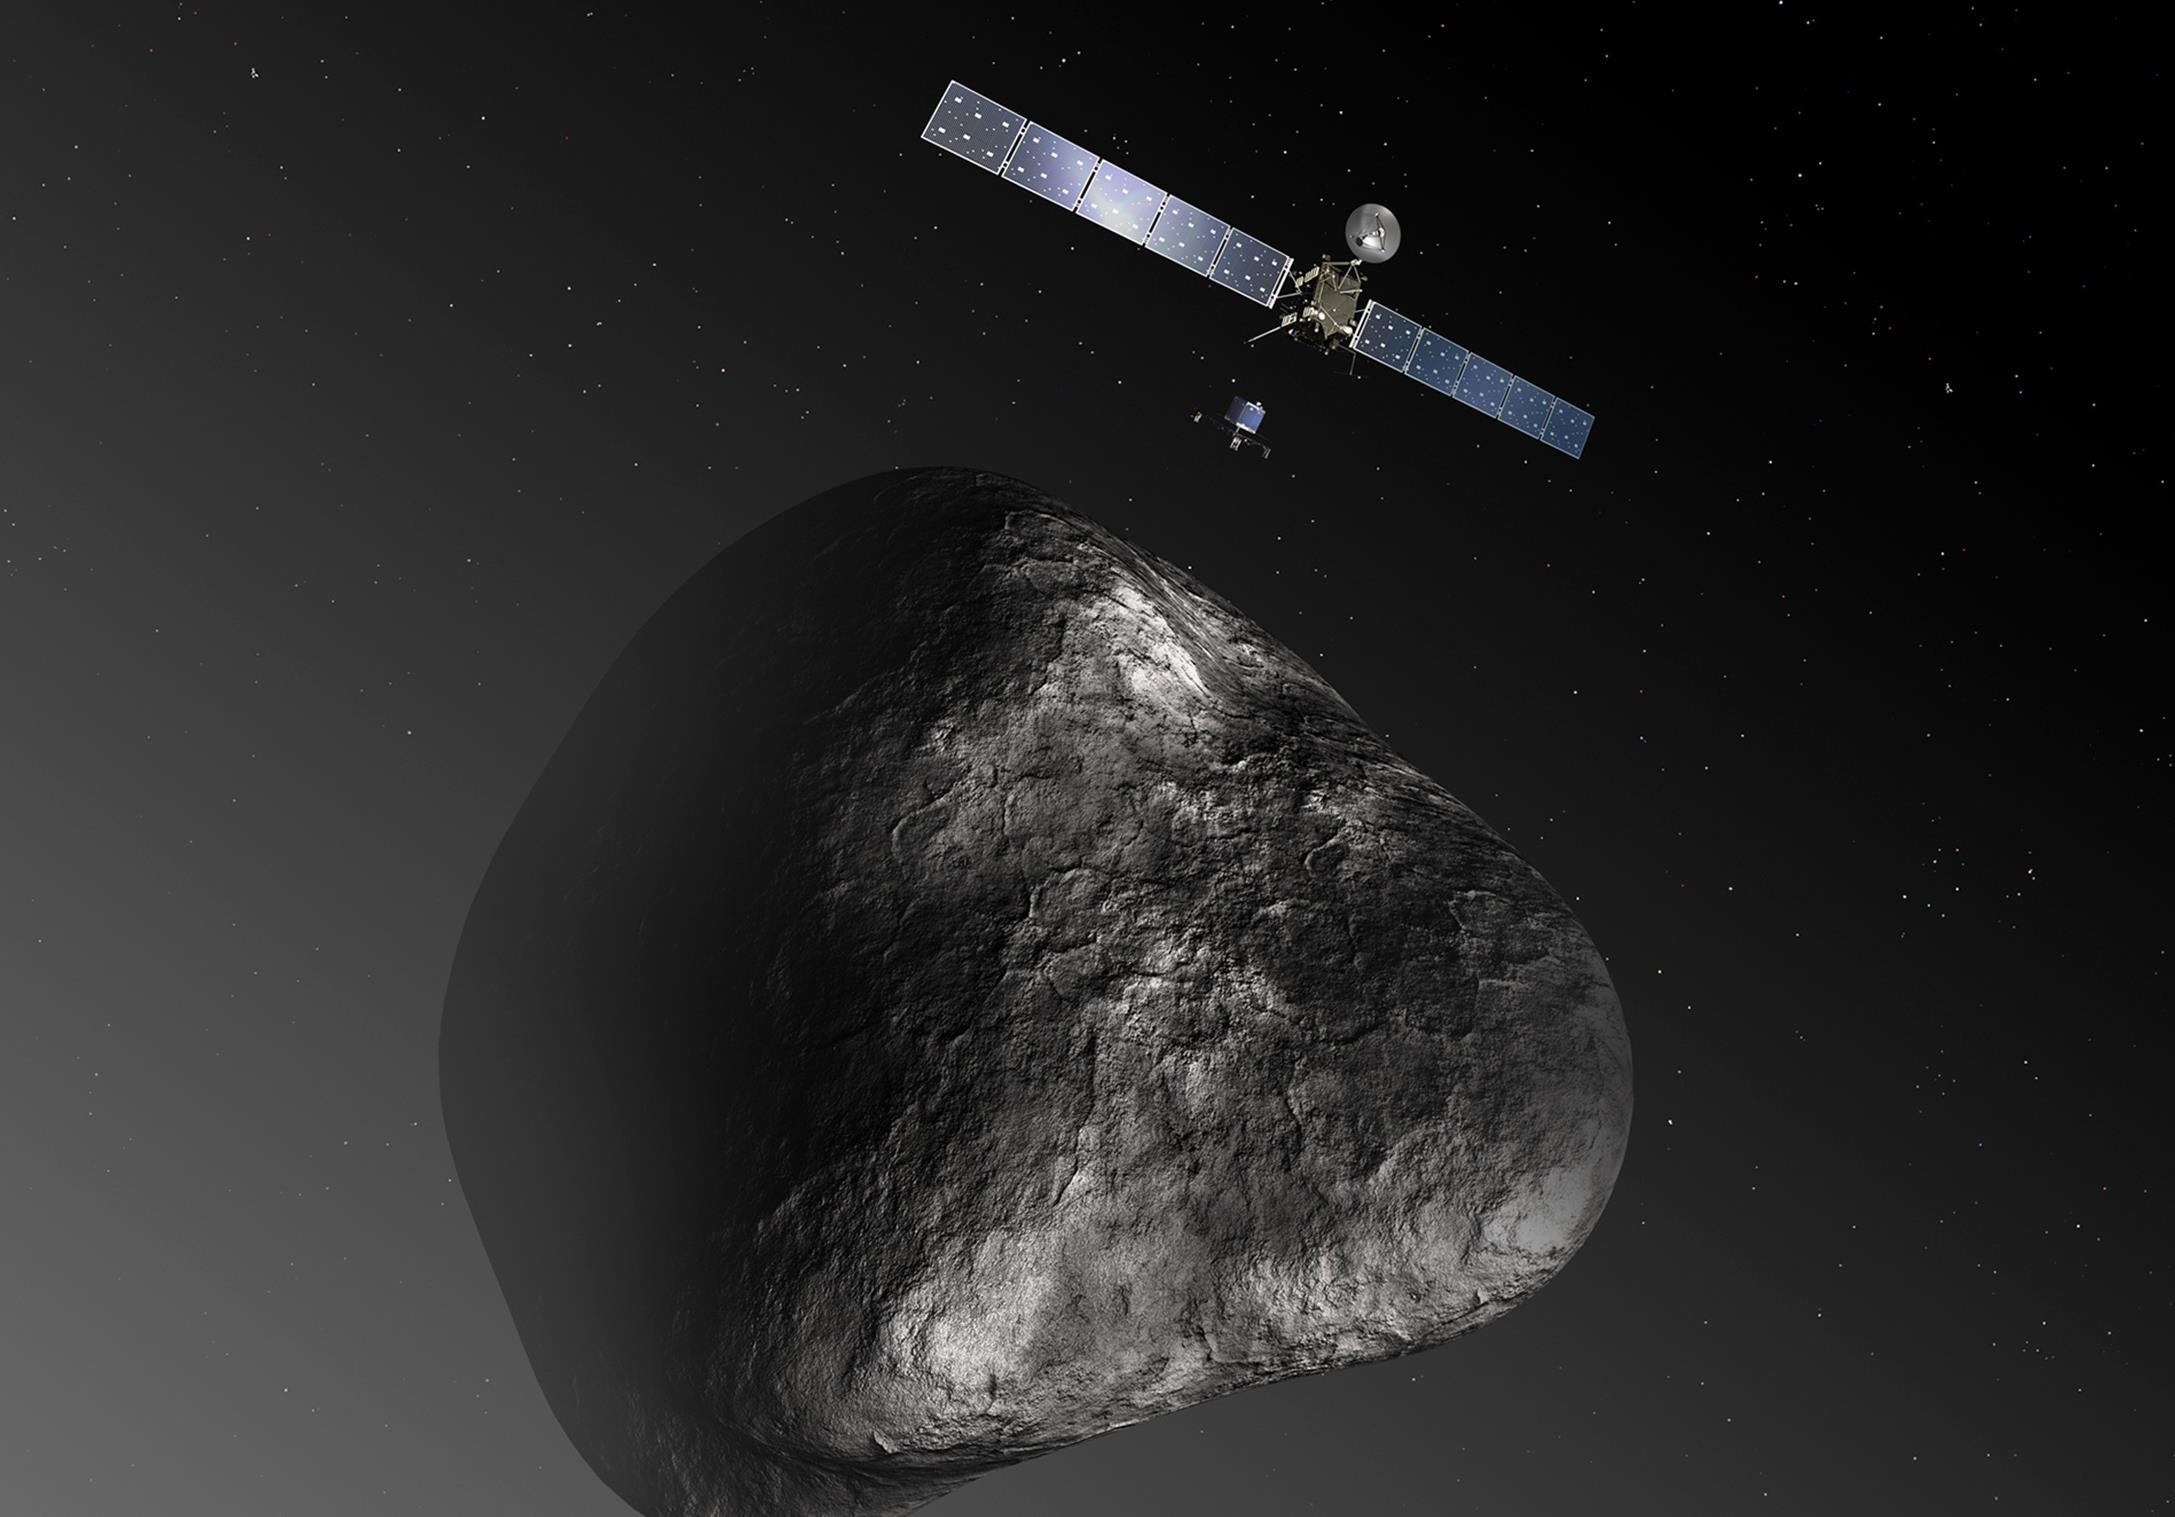 Η επική αποστολή Rosetta συνετρίβη στο σκοτεινό αντικείμενο του πόθου της